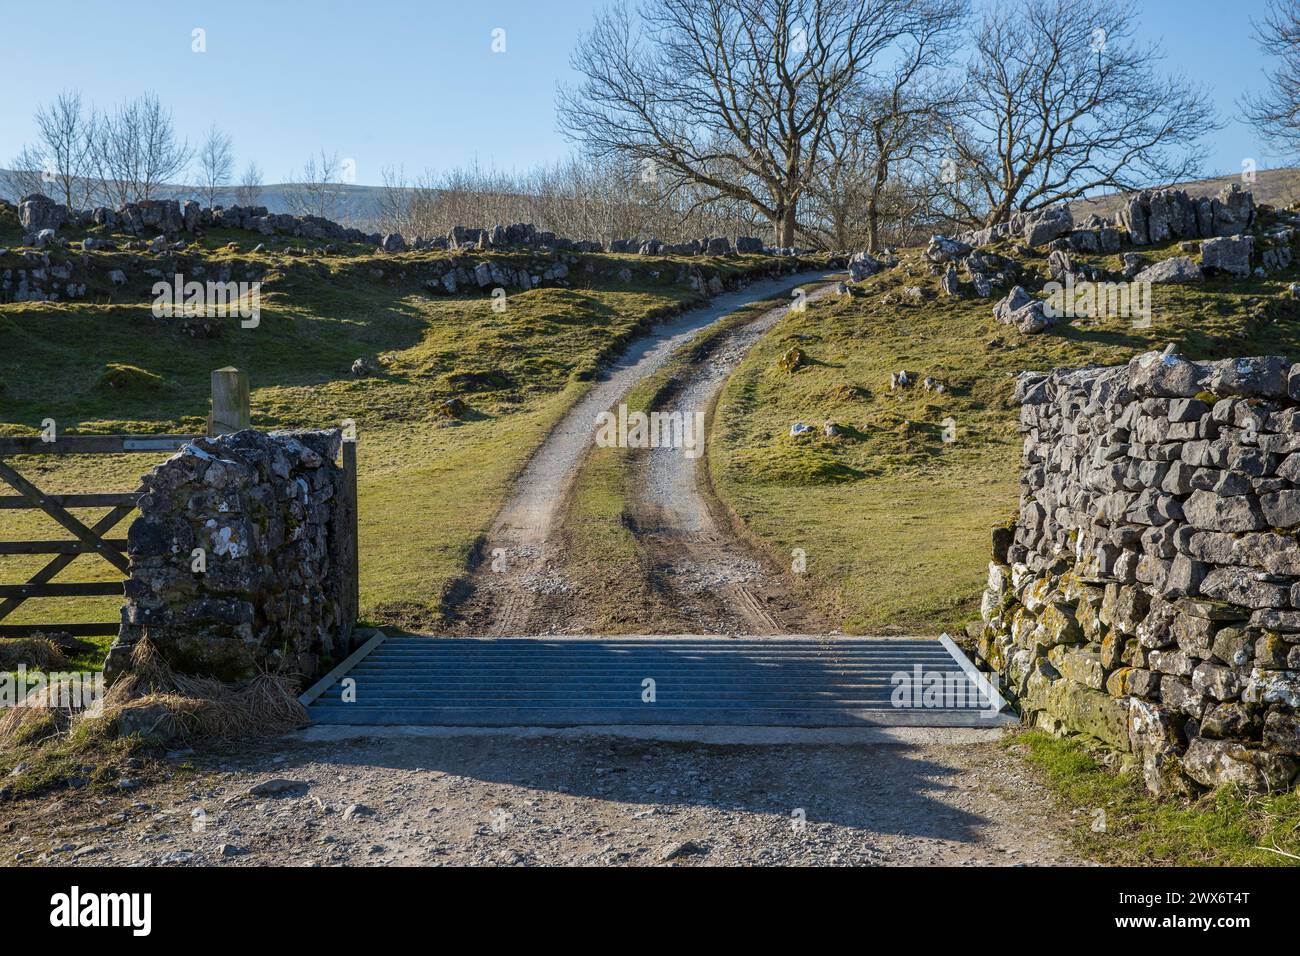 Una rete di bestiame e una strada agricola sterrata nella campagna del North Yorkshire che conduce in lontananza con muretti a secco, marciapiedi calcarei, alberi e colline Foto Stock